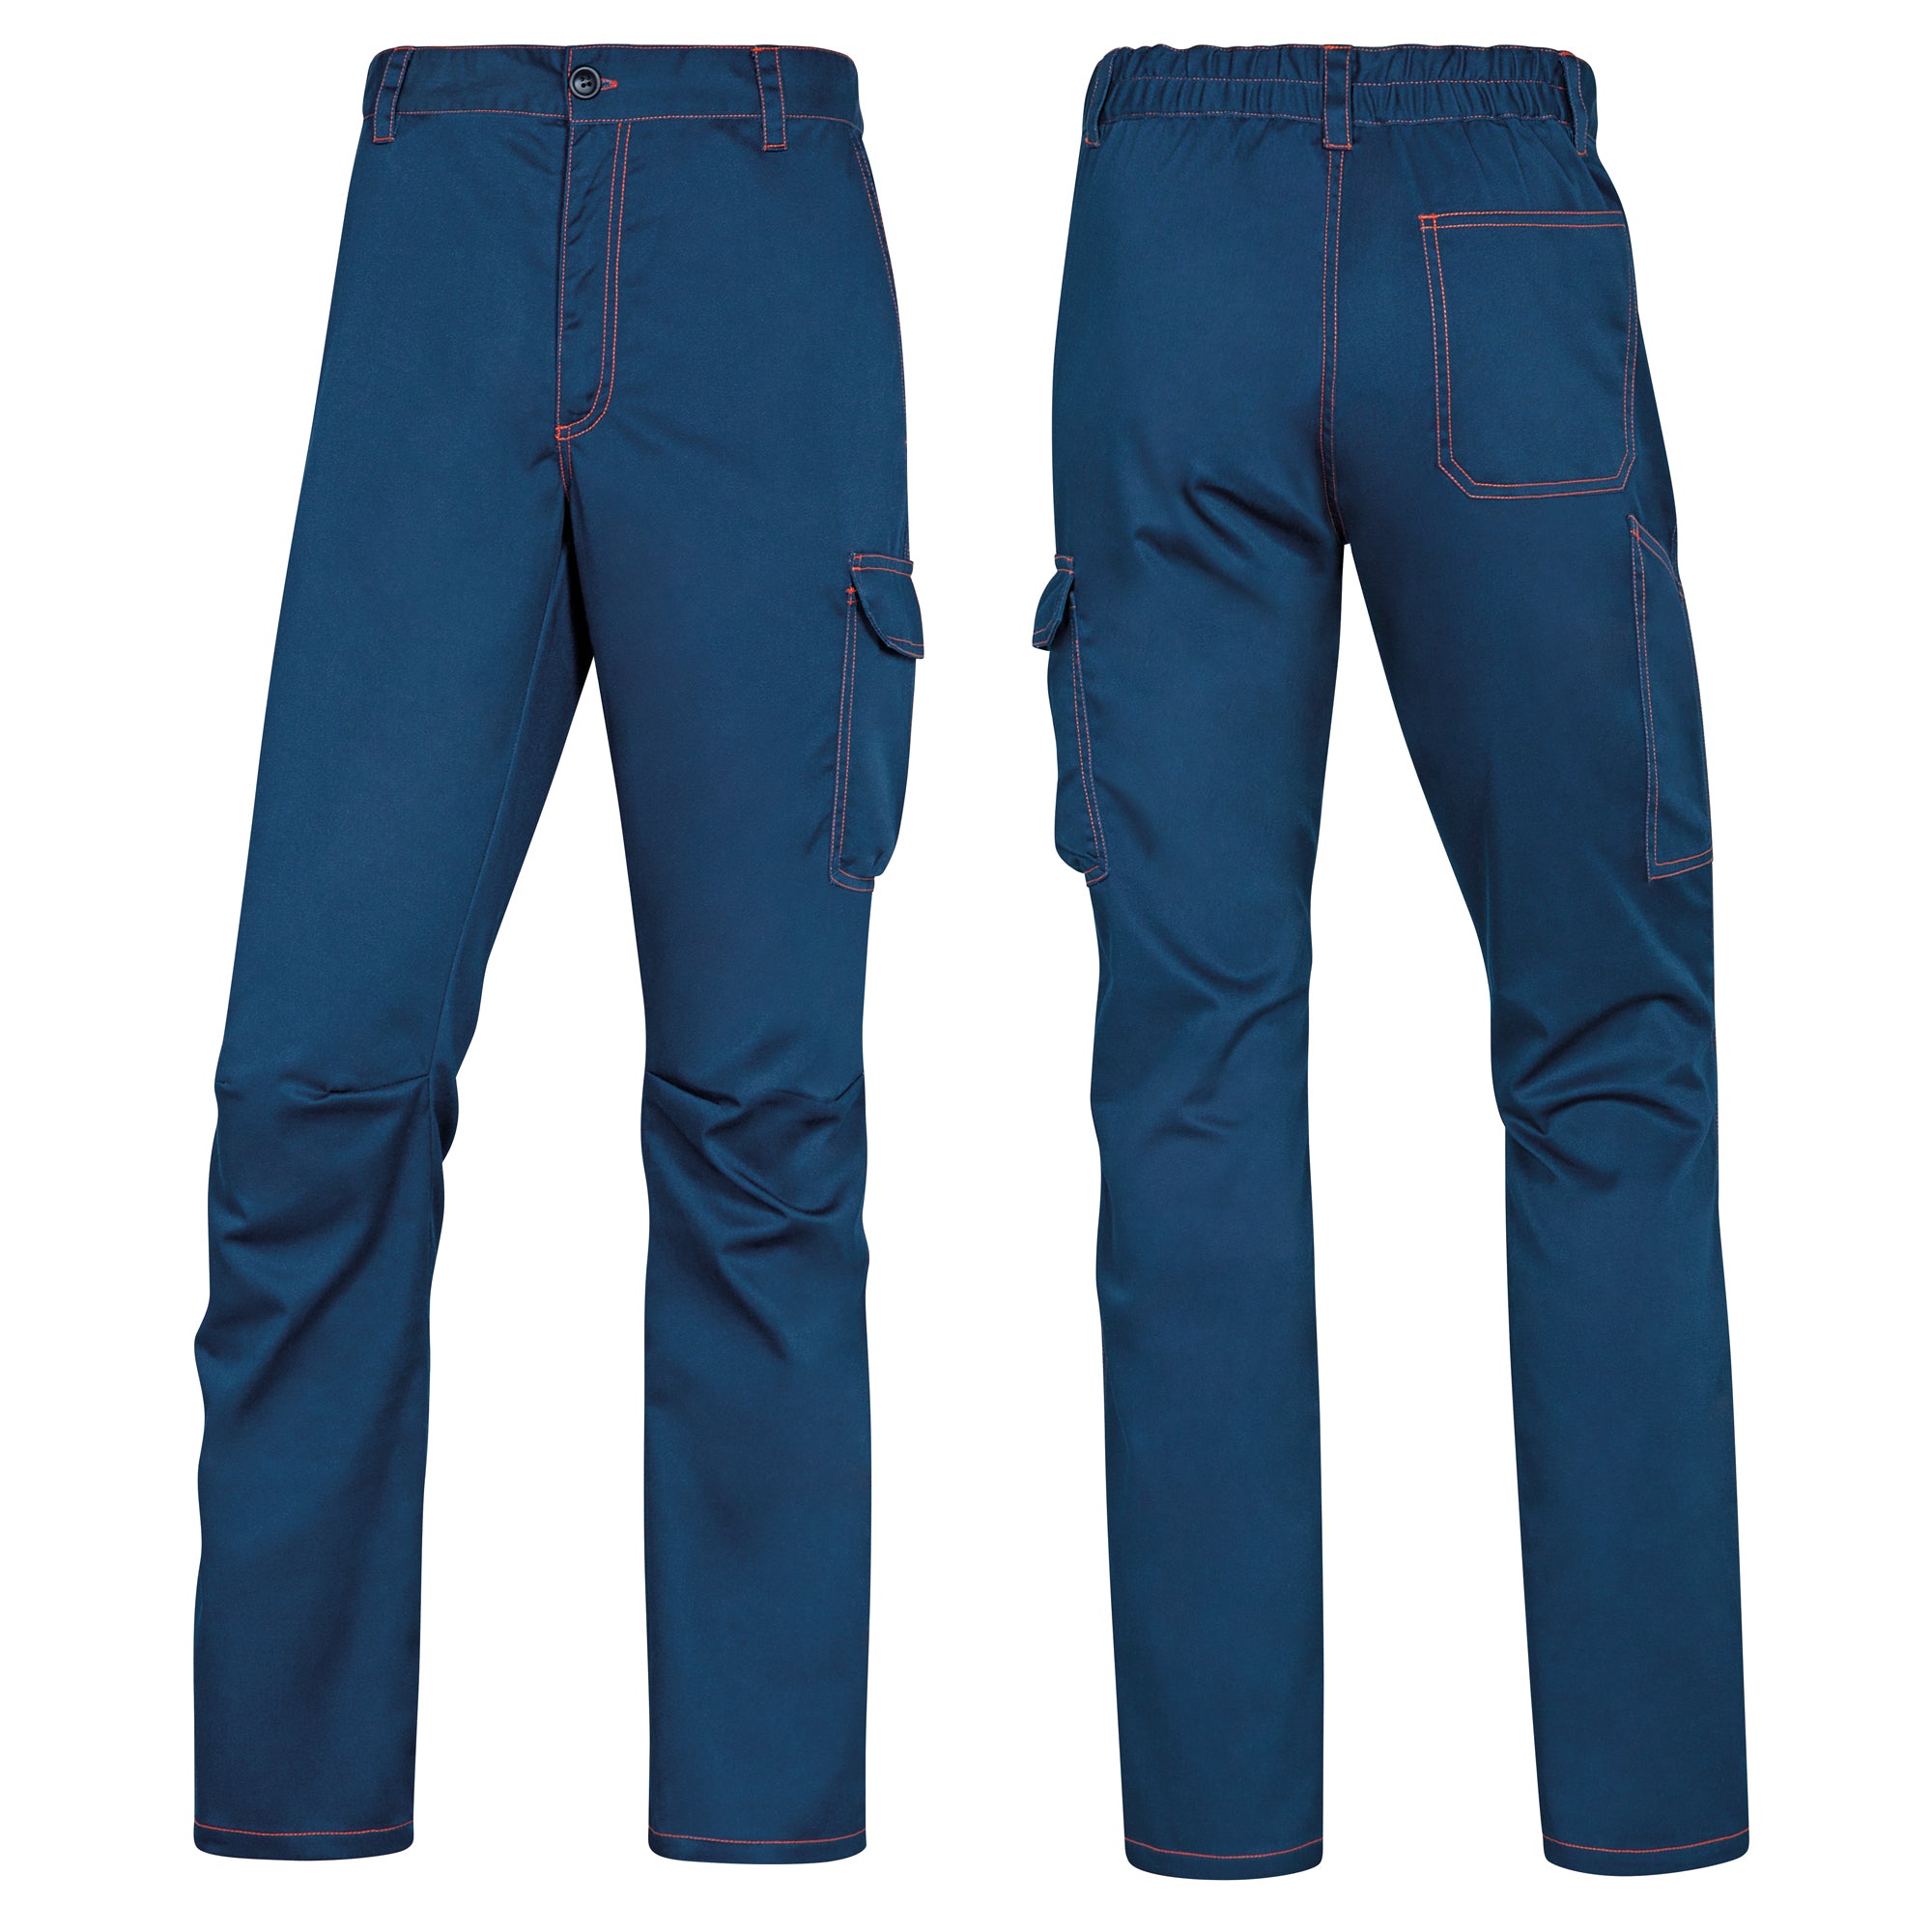 deltaplus-pantalone-lavoro-panostrpa-tg-l-blu-arancio